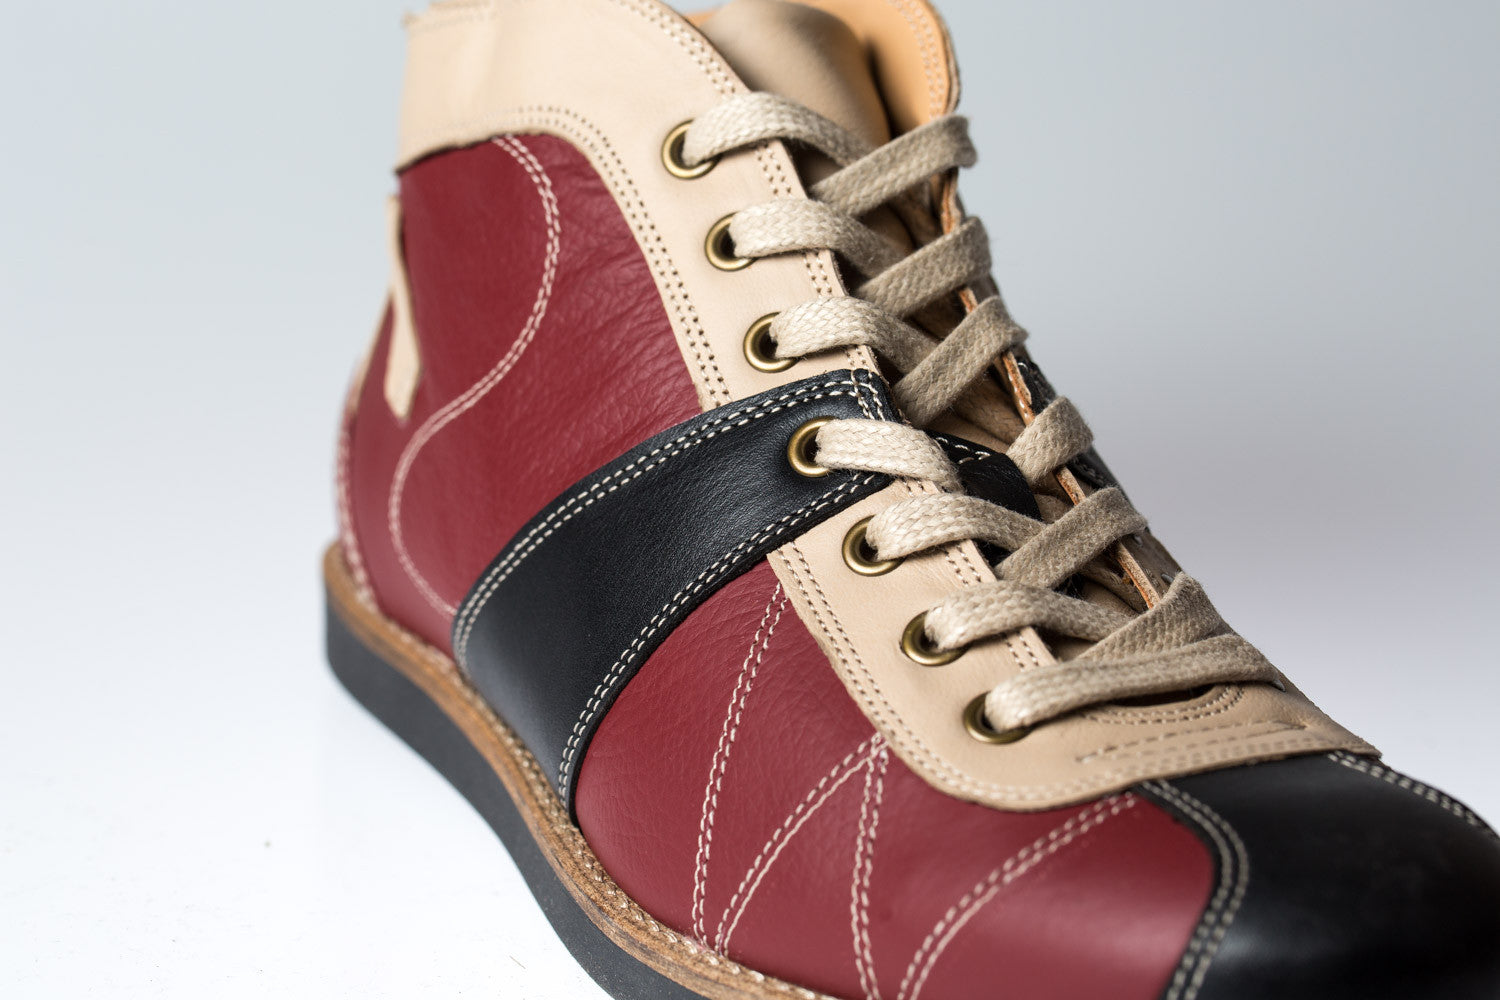 Leder Retro Sneaker "the Kicker" in rot/weiß/schwarz